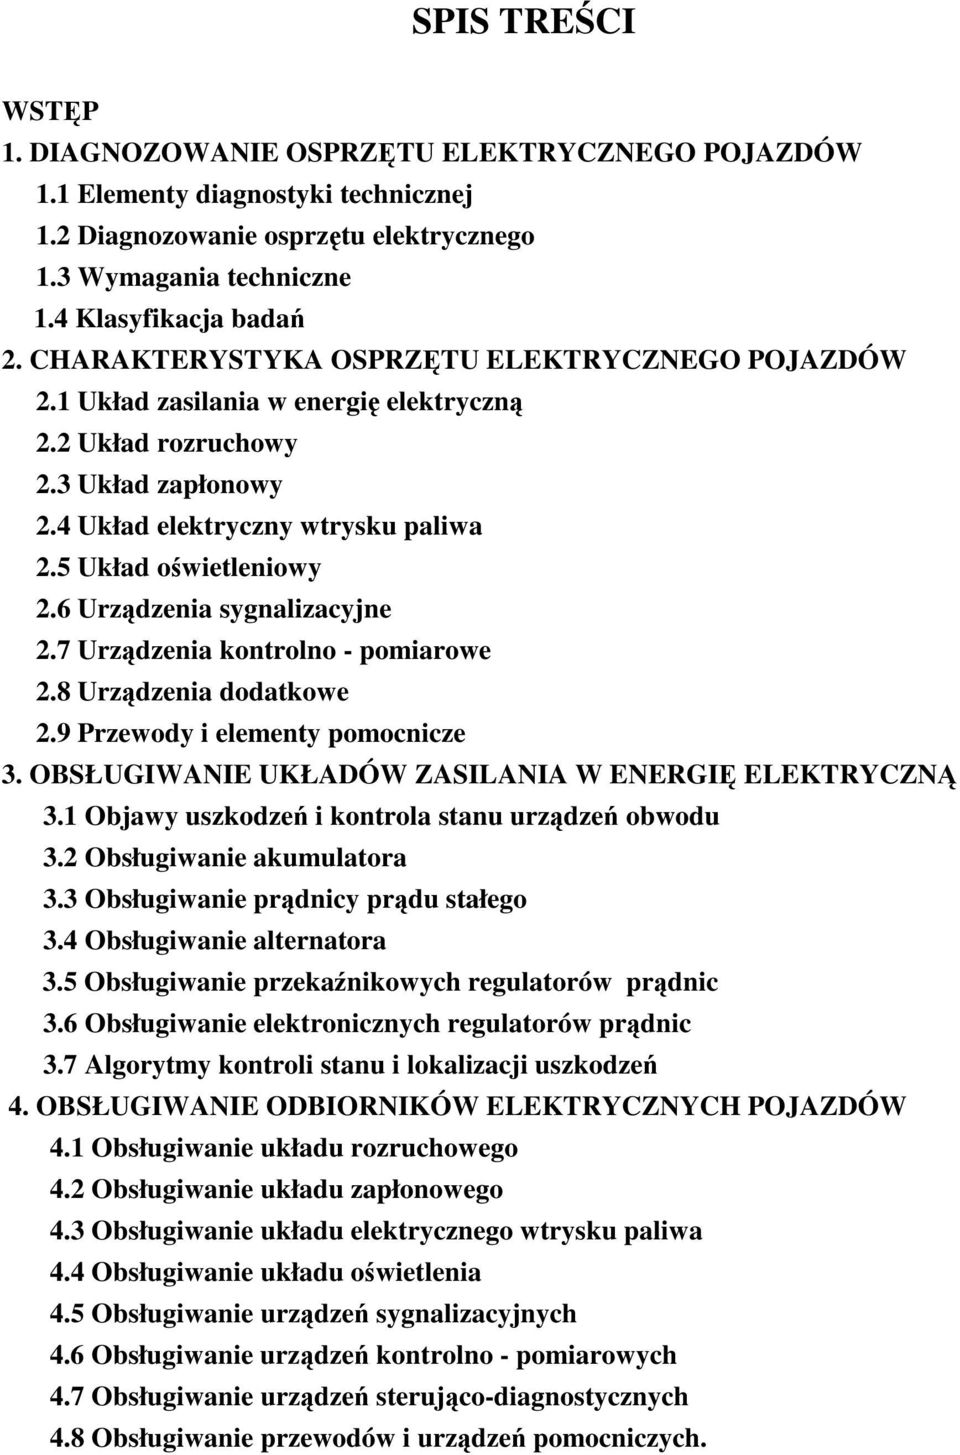 6 Urzdzenia sygnalizacyjne 2.7 Urzdzenia kontrolno - pomiarowe 2.8 Urzdzenia dodatkowe 2.9 Przewody i elementy pomocnicze 3. OBSŁUGIWANIE UKŁADÓW ZASILANIA W ENERGI ELEKTRYCZN 3.